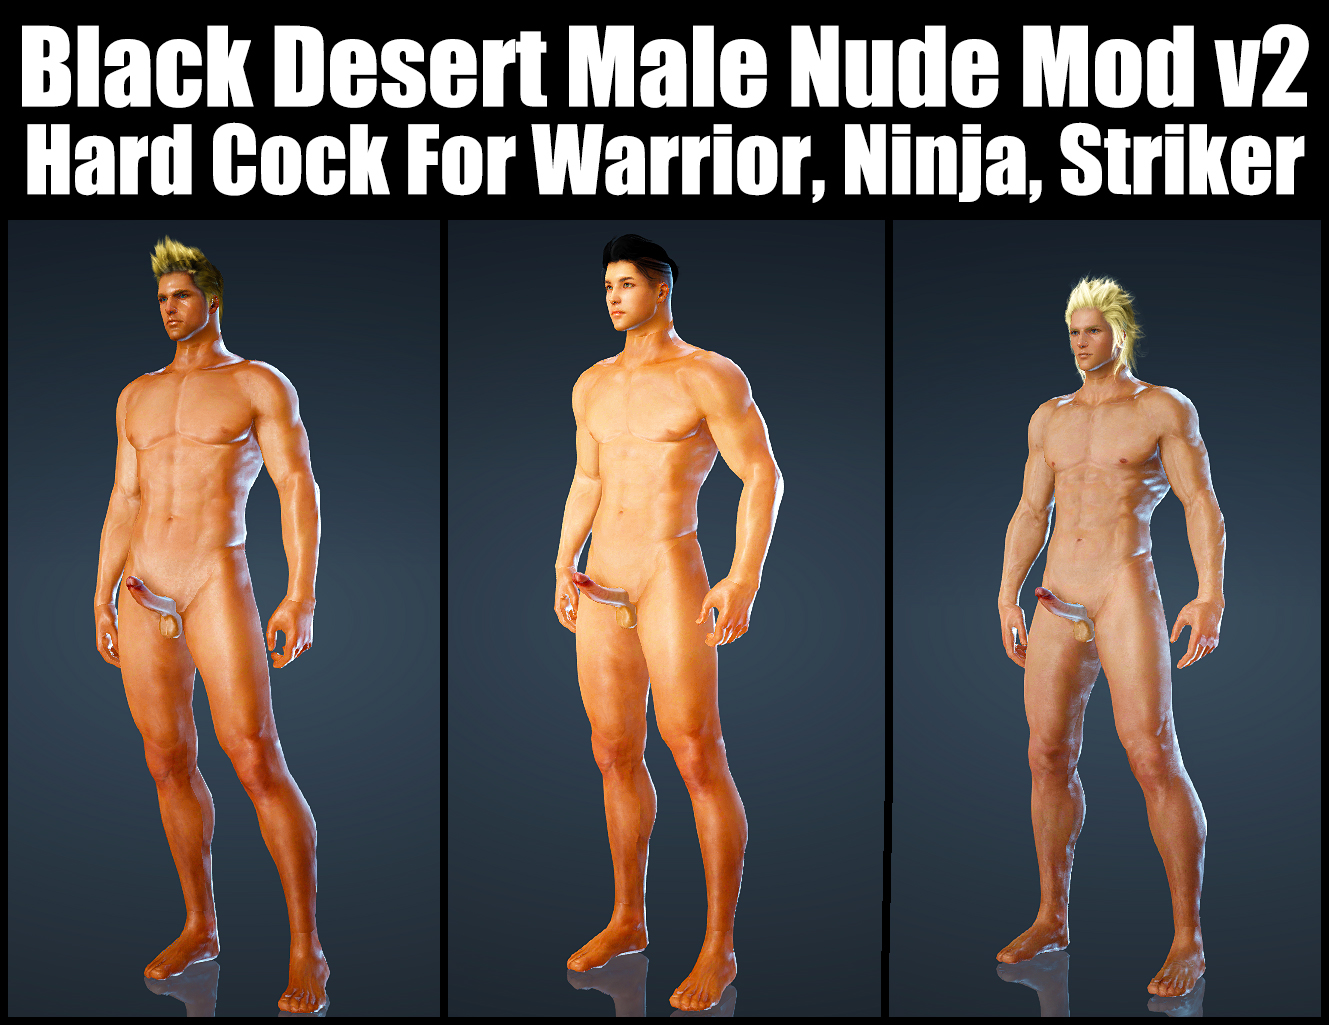 Black Desert Male Nude Mod V2 Hard Cock For Warrior, Ninja, Striker.jpg.